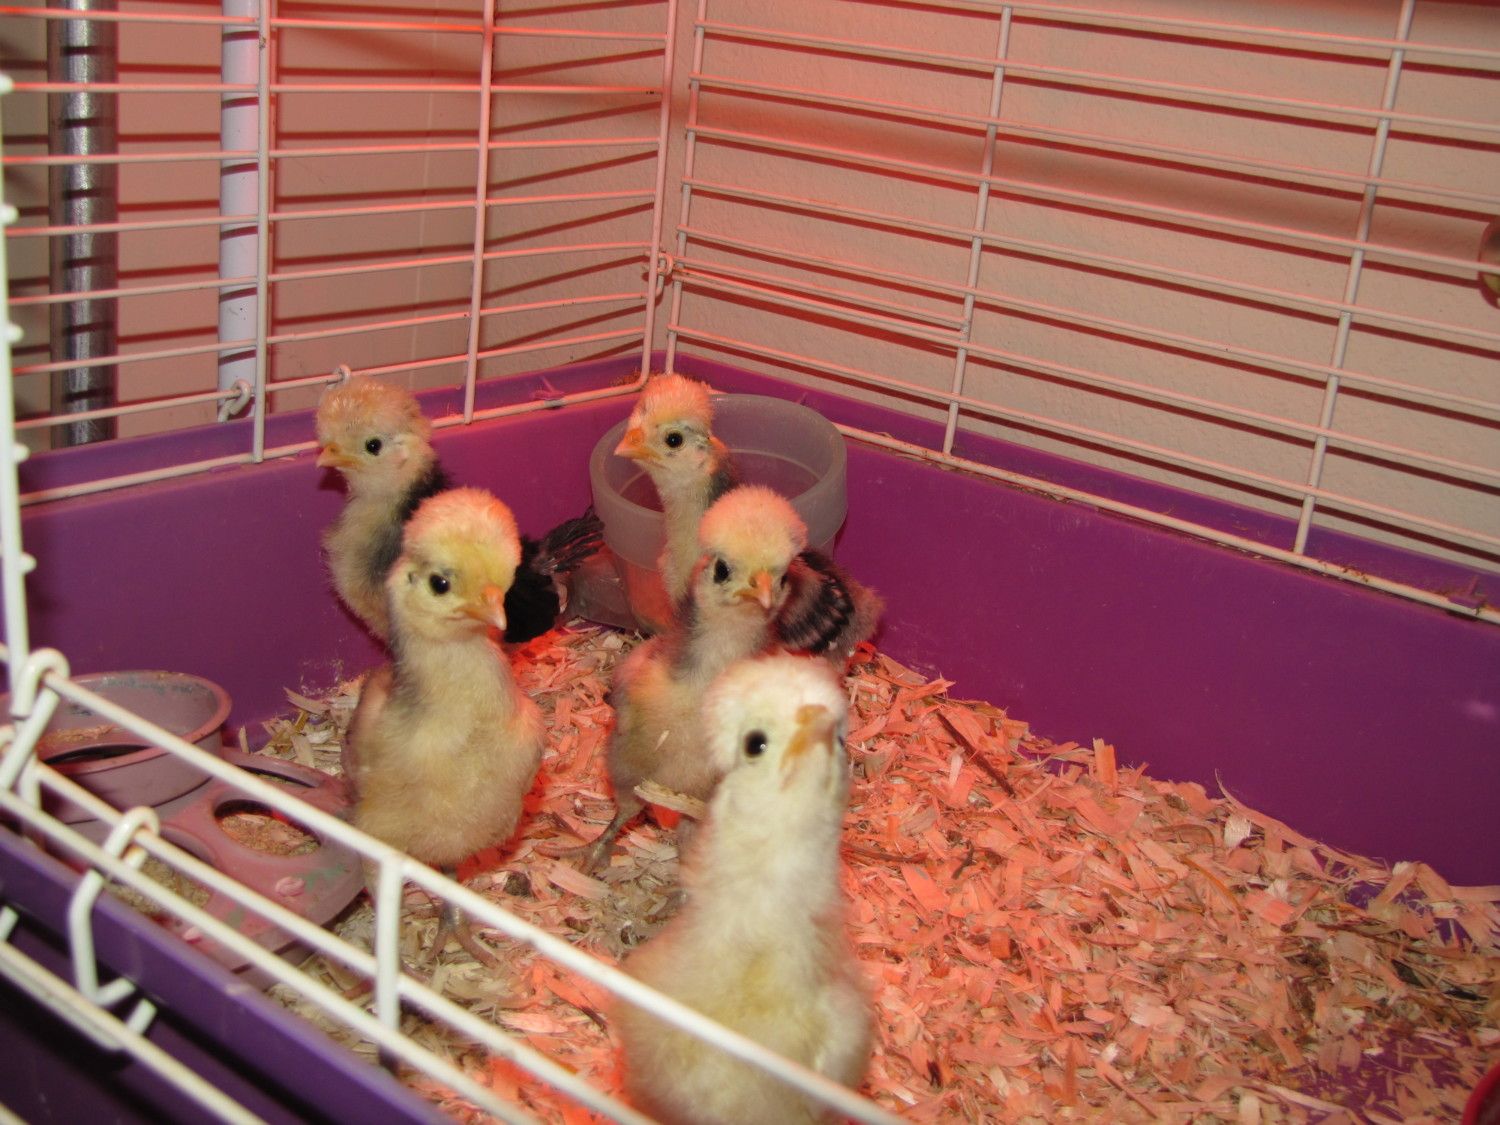 SQ Polish chicks